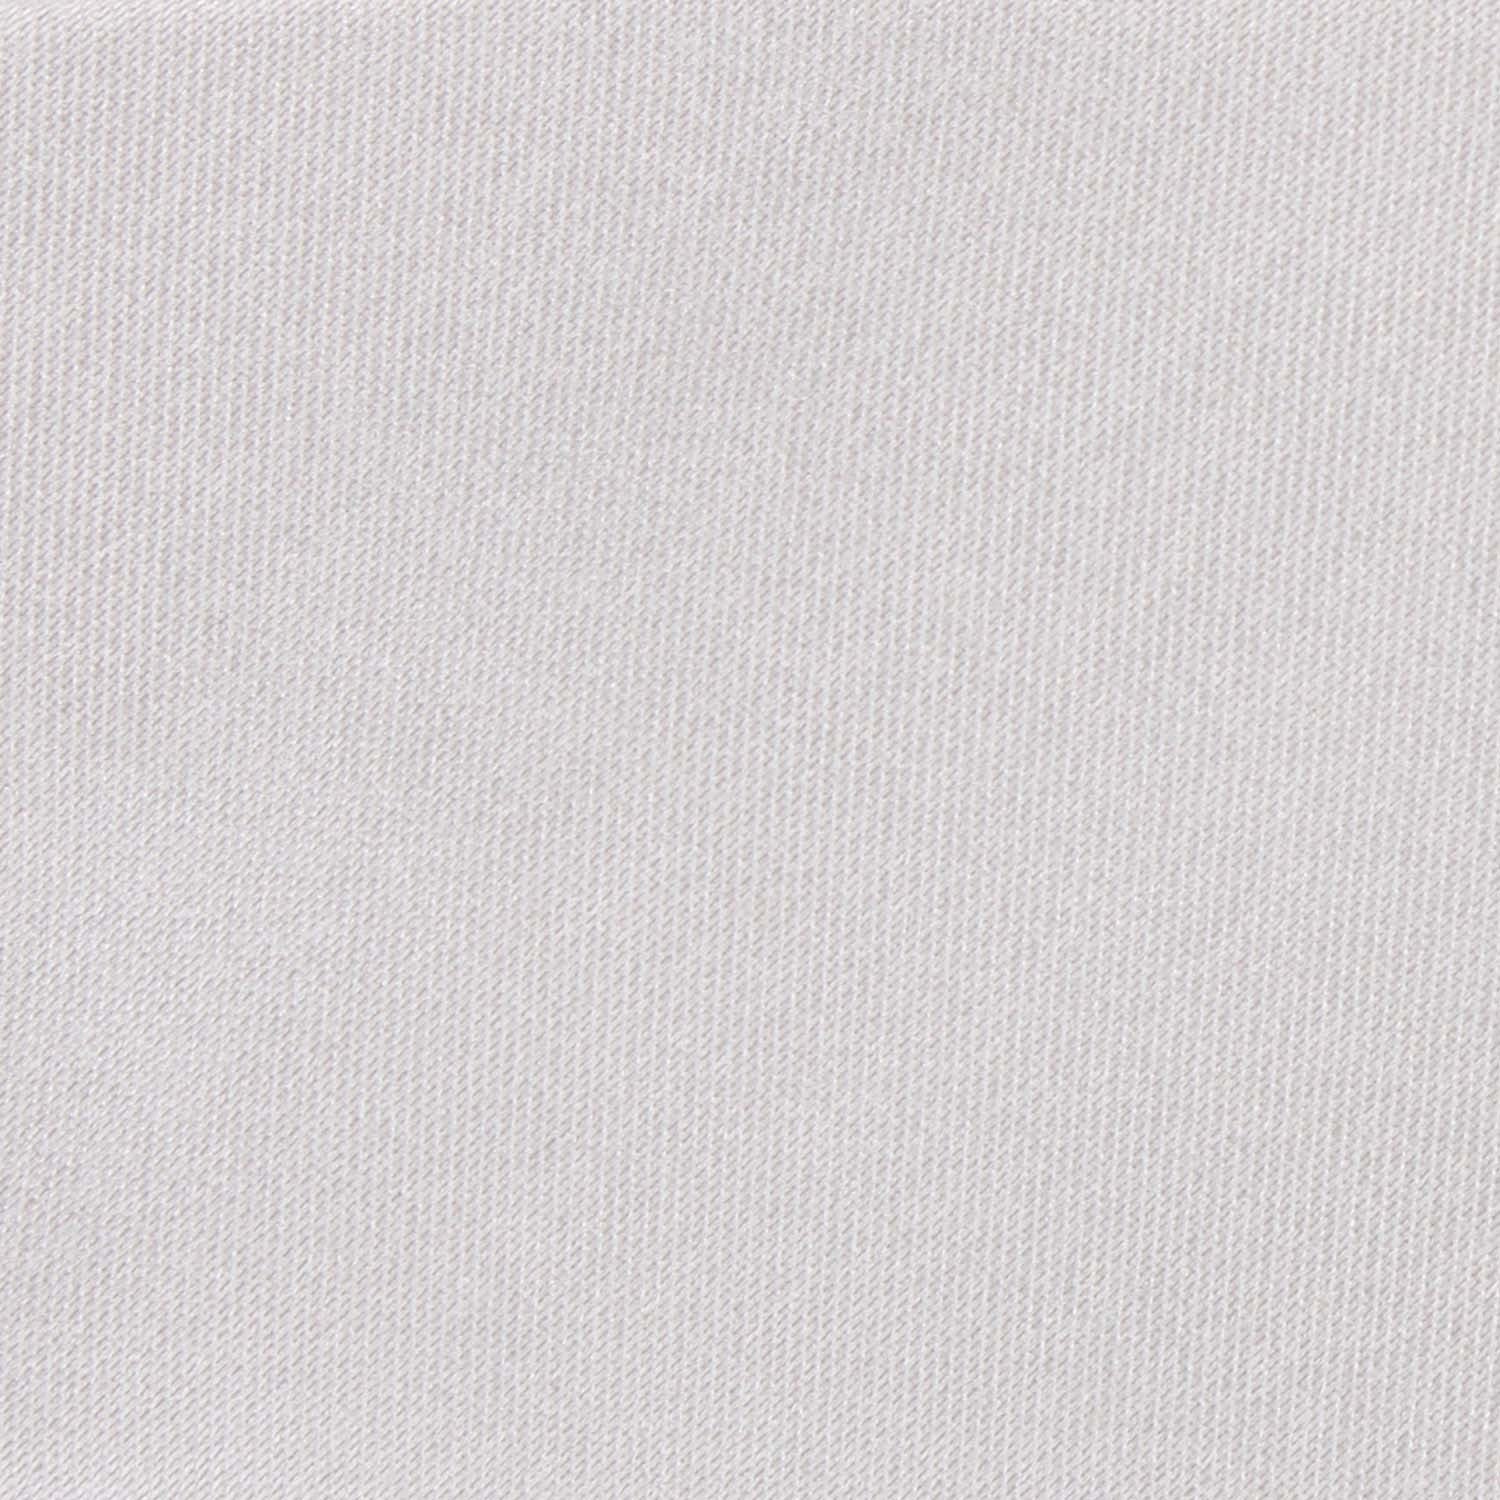 Light Grey Satin Fabric Skinny Tie M146